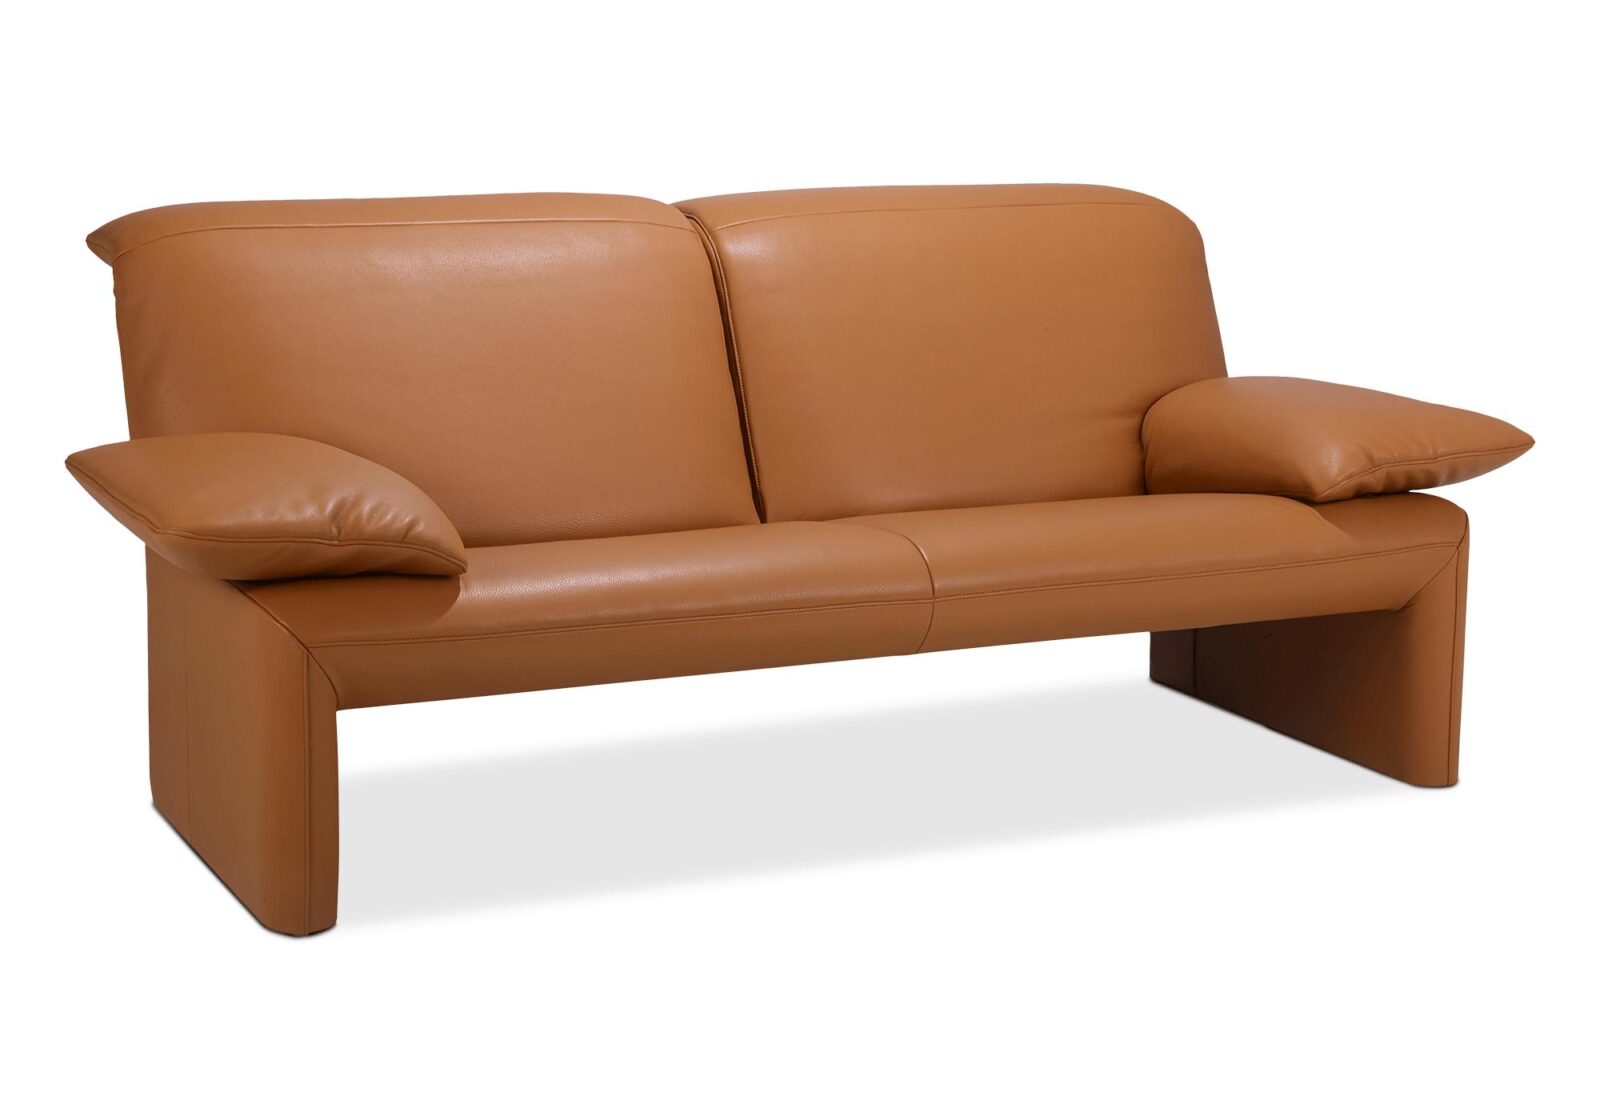 3er Sofa Linea Jori  verstellbare Armlehnen. Bezug: Leder. Farbe: Braun. Erhältlich bei Möbel Gallati.